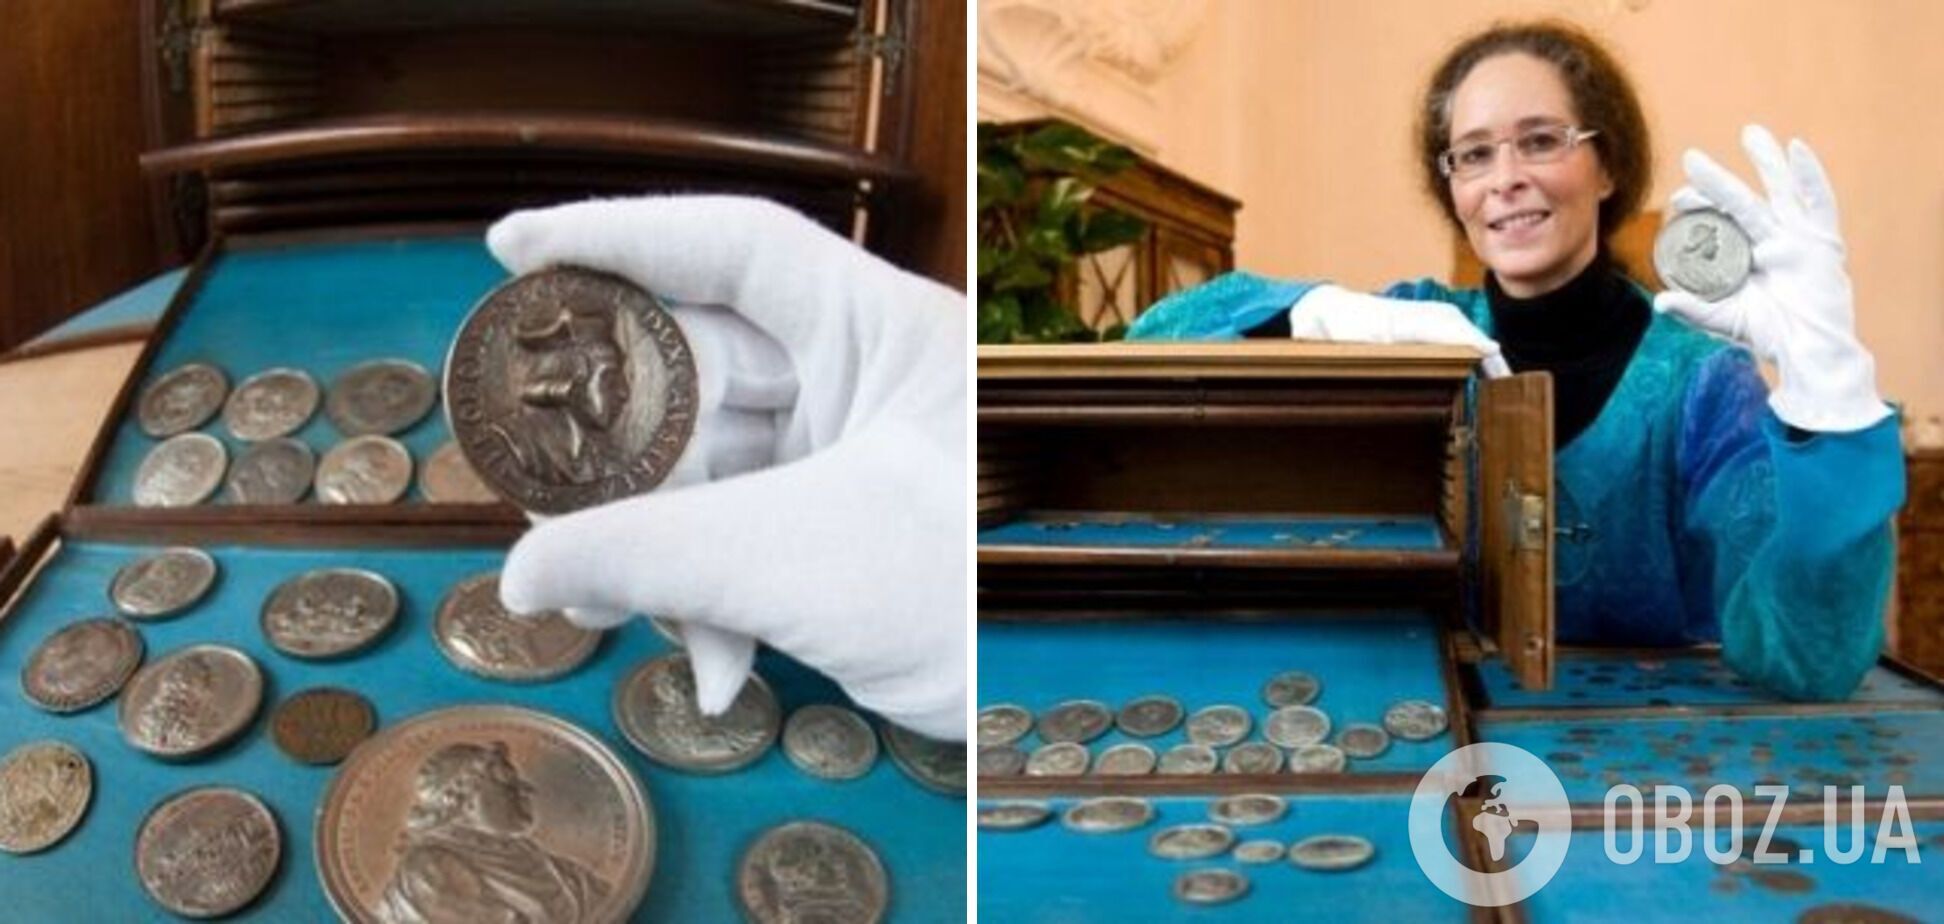 Уборщица нашла монеты в библиотеке.